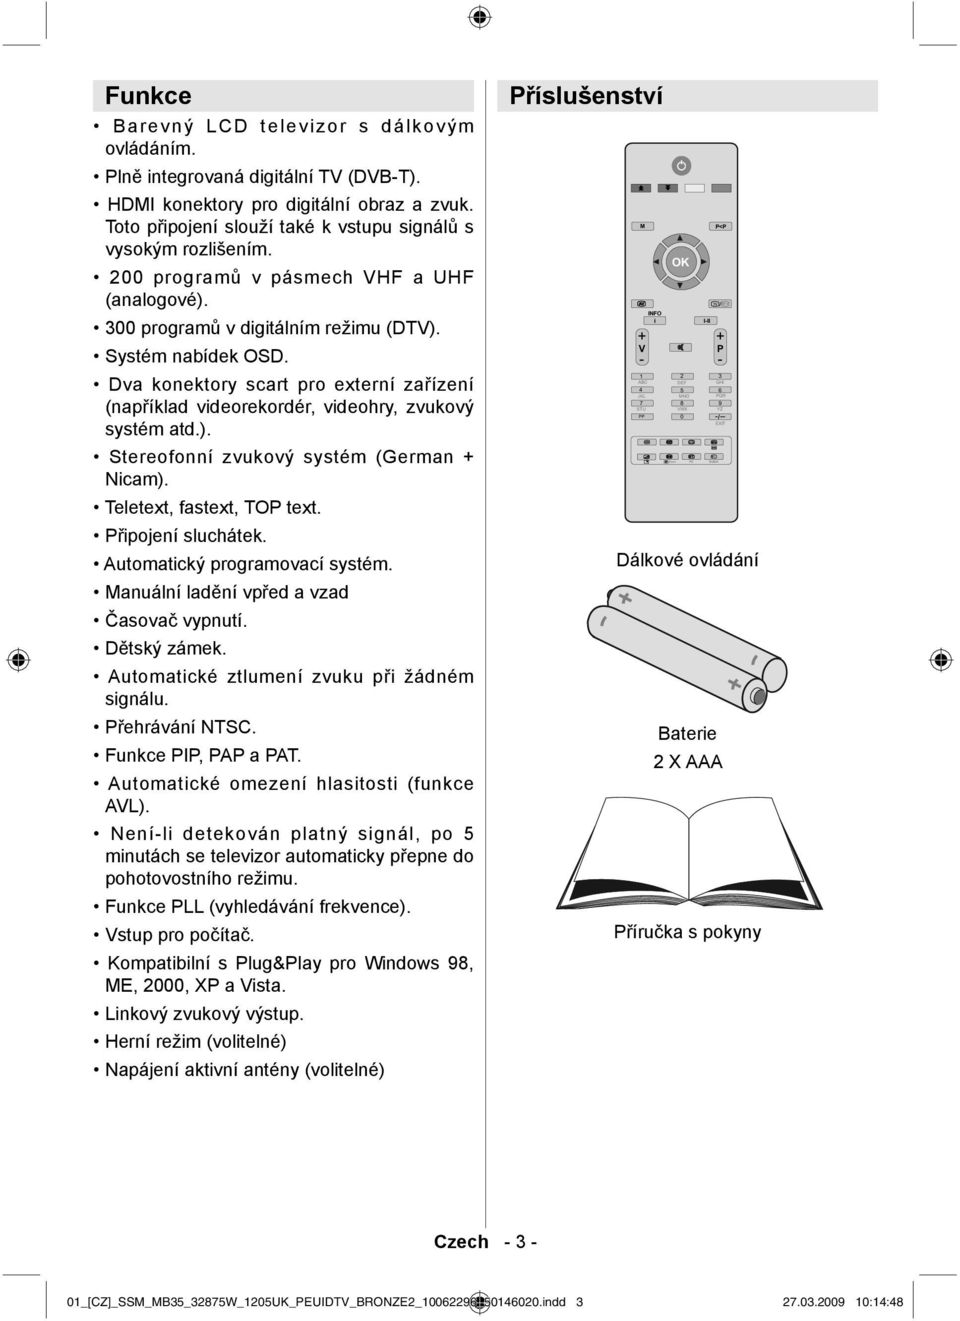 Dva konektory scart pro externí zařízení (například videorekordér, videohry, zvukový systém atd.). Stereofonní zvukový systém (German + Nicam). Teletext, fastext, TOP text. Připojení sluchátek.